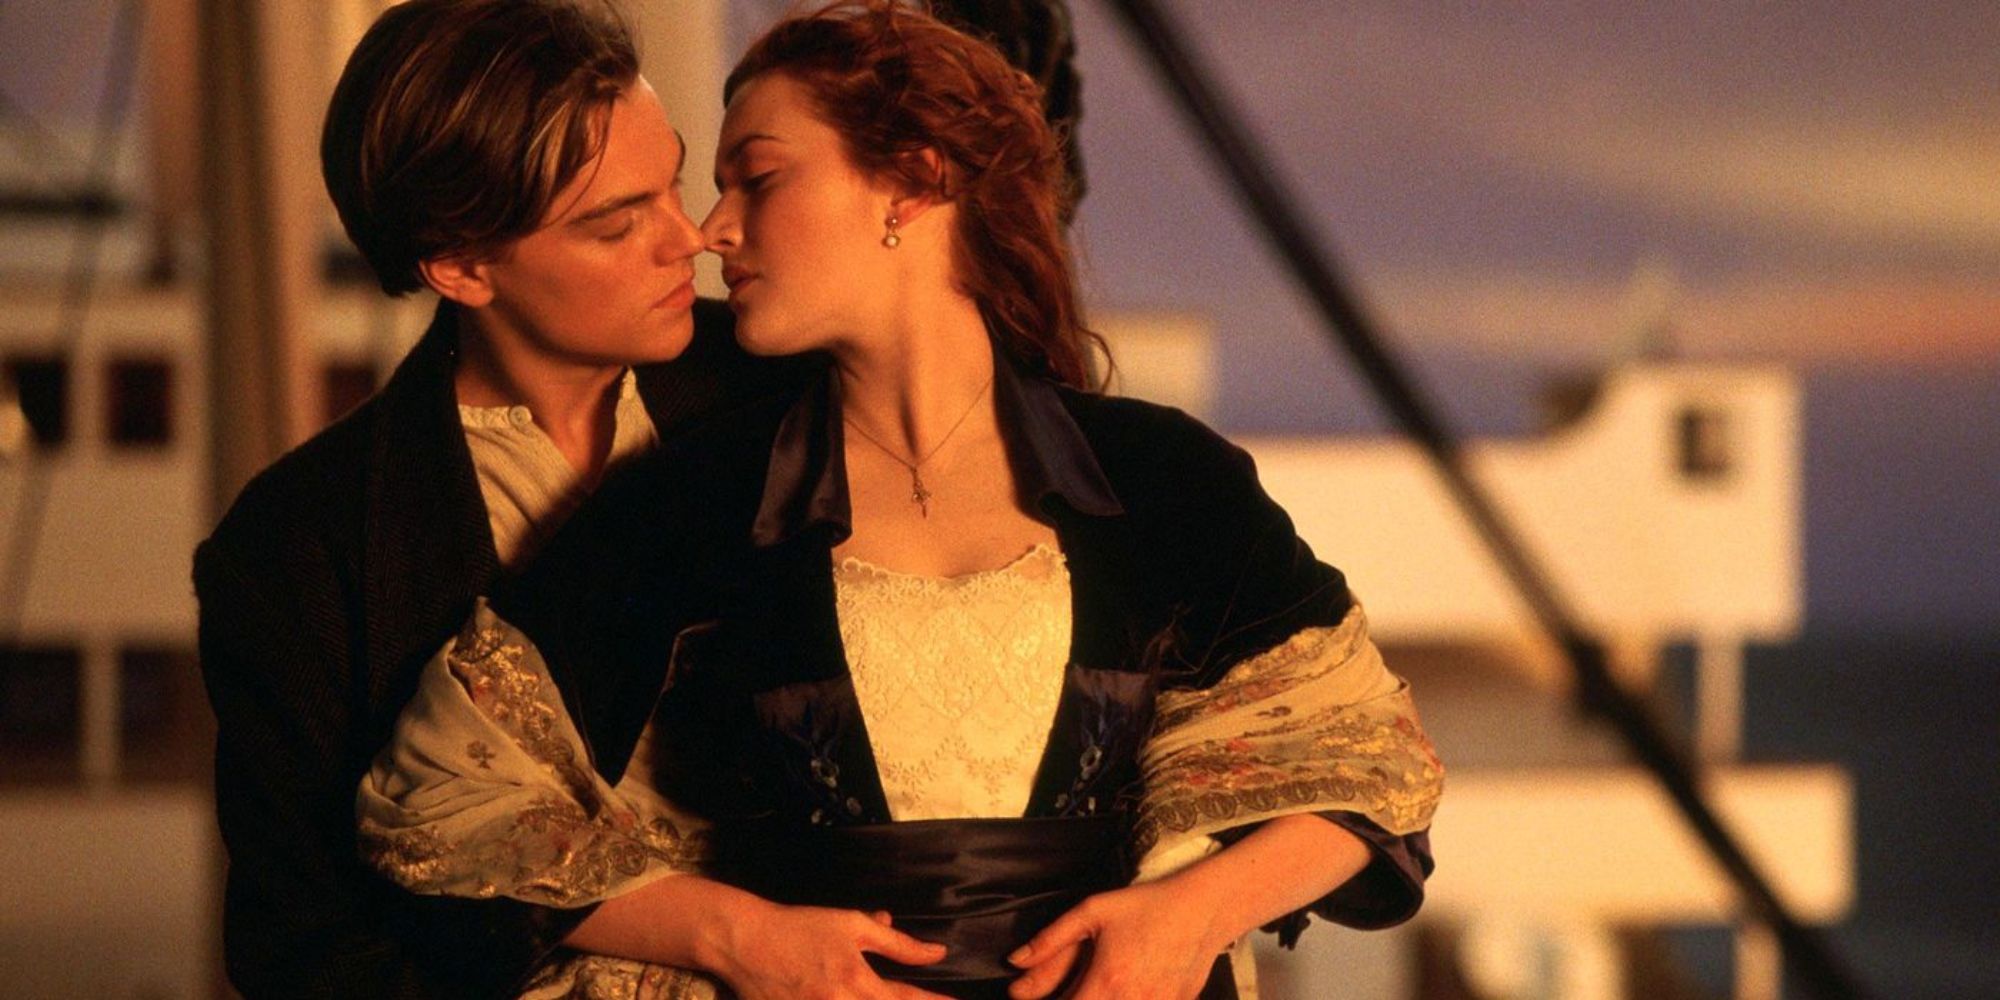 Jack e Rose compartilham um momento romântico no Titanic